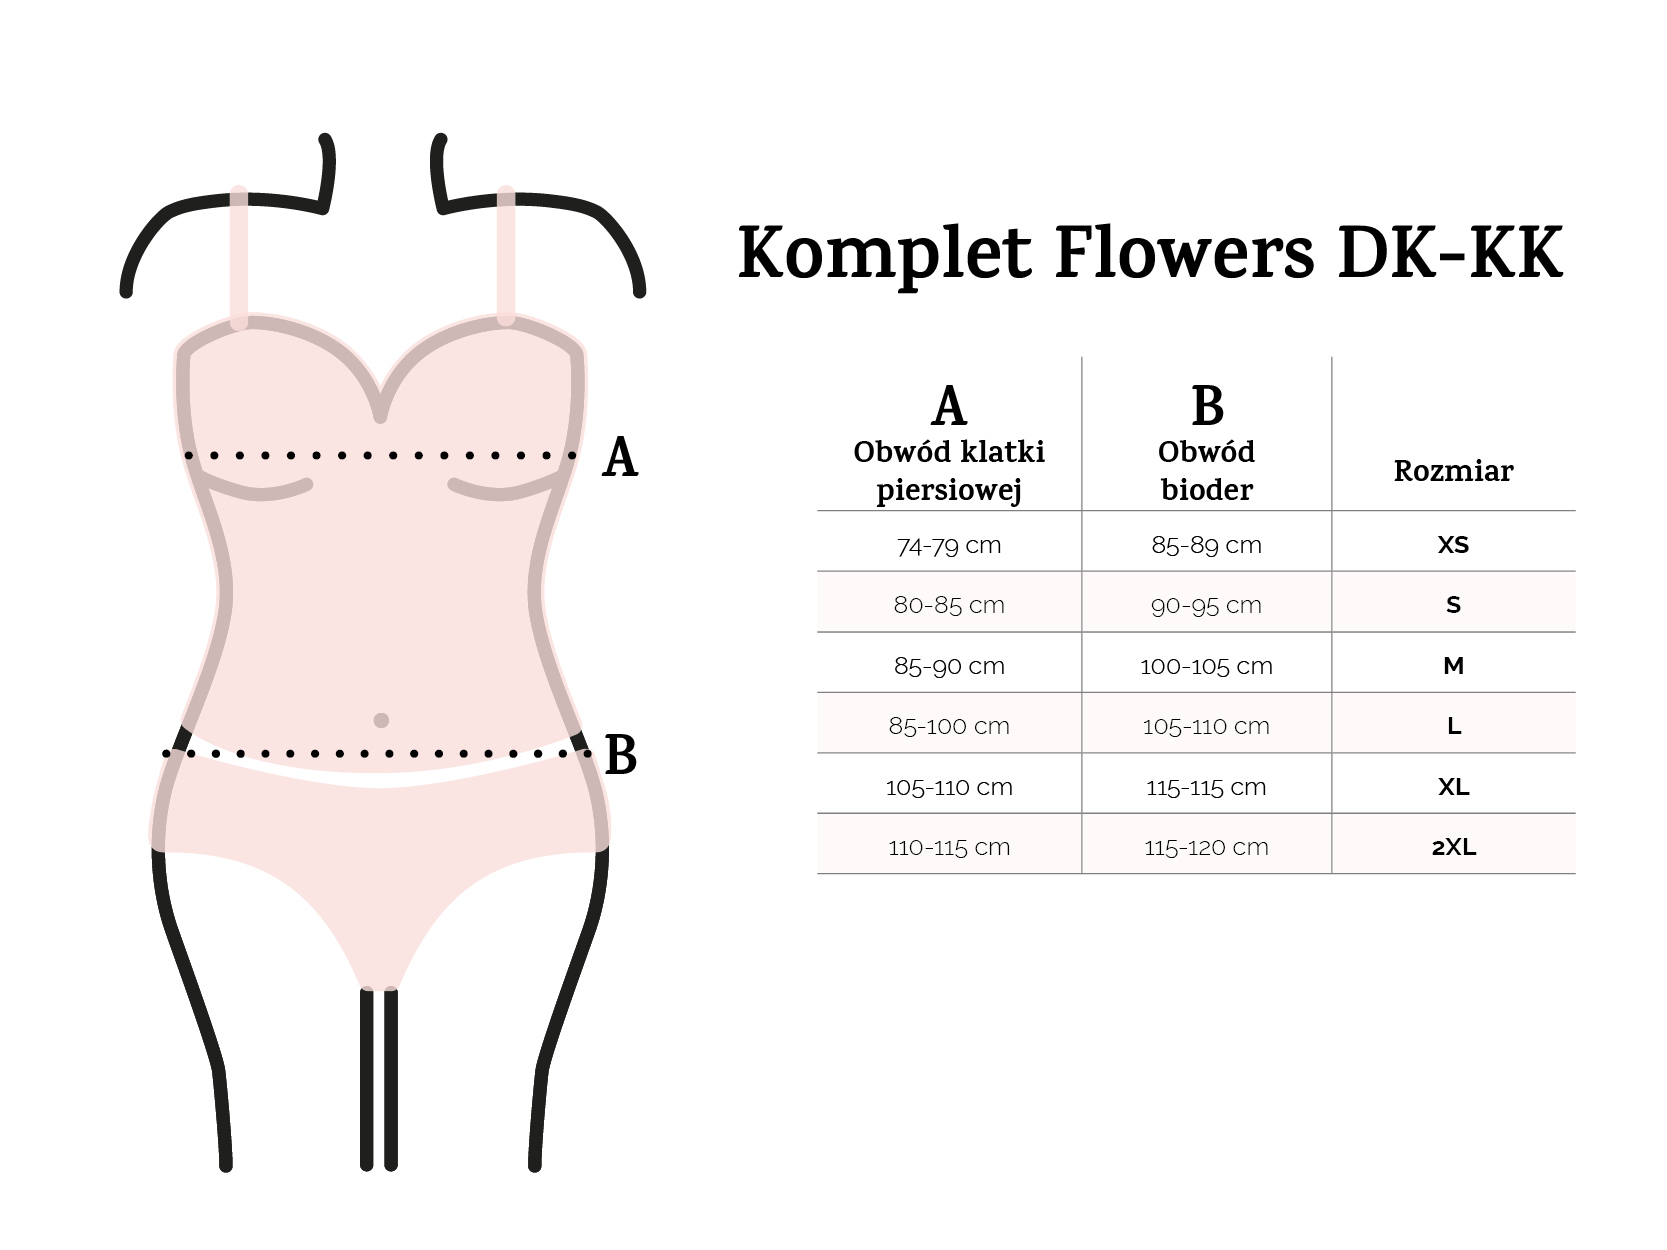 Komplet Flowers DK-KK